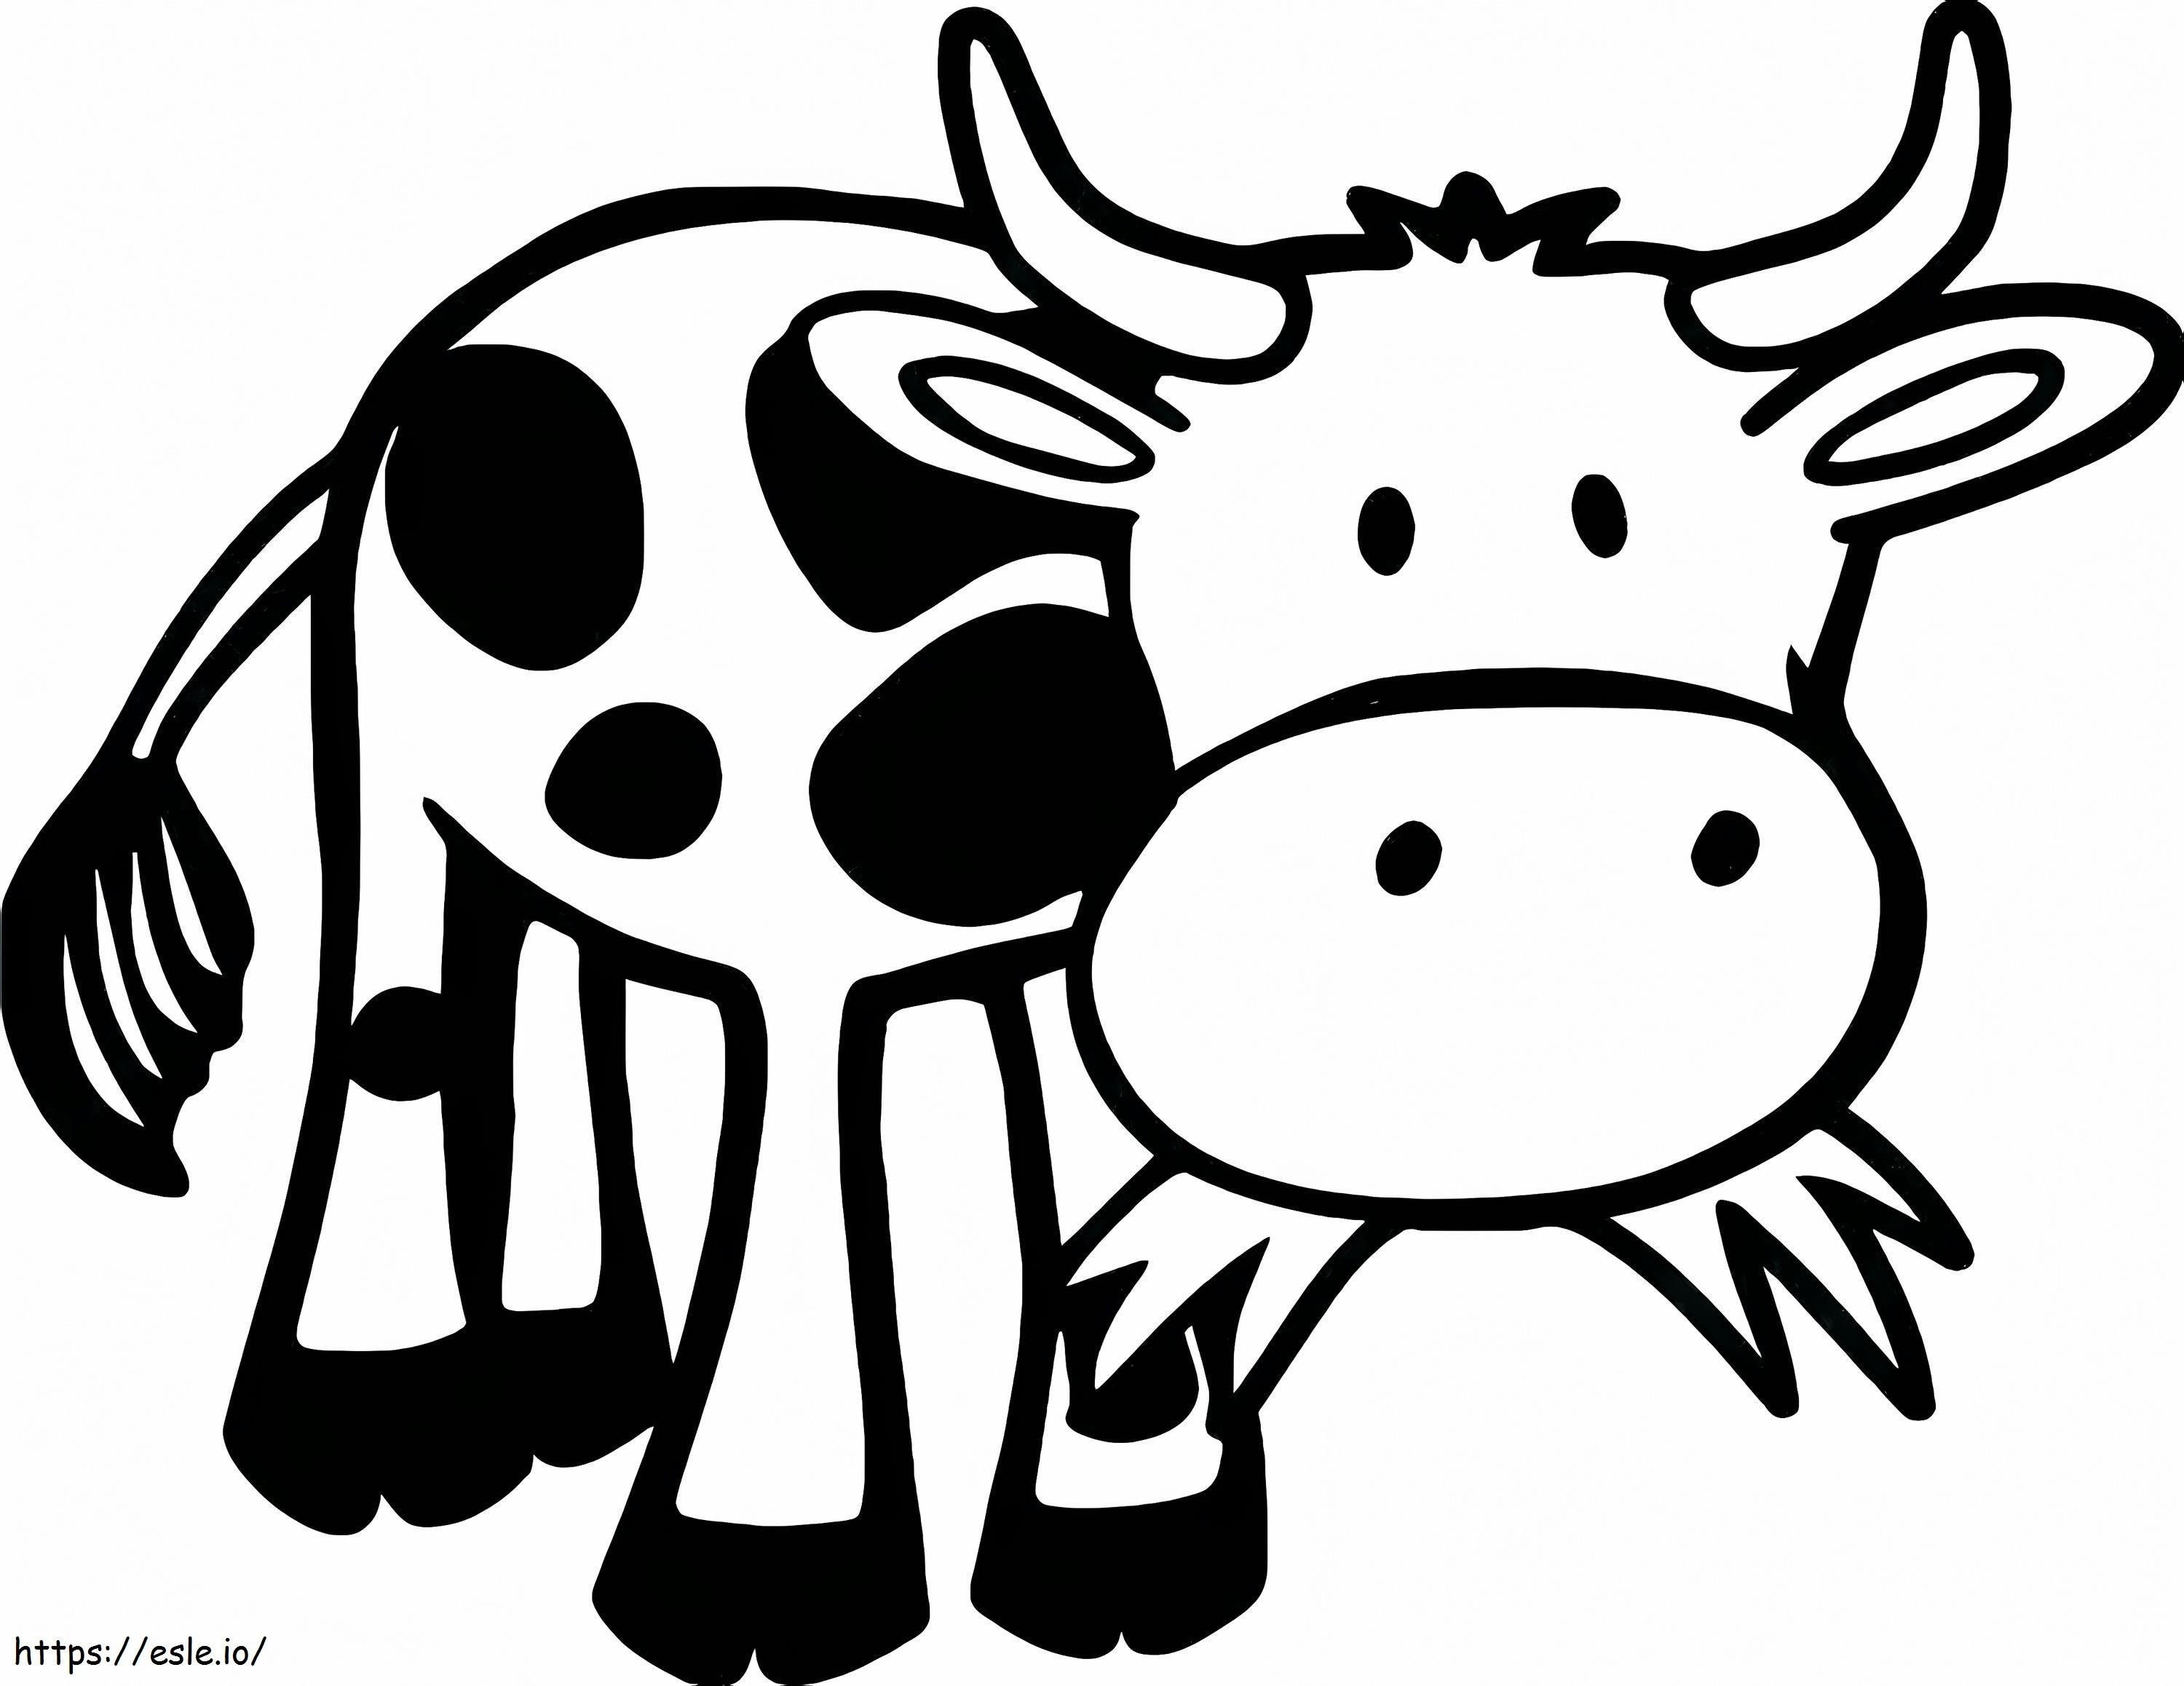  Von Kühen Kühe Kostenlose druckbare Kuhseite für Erwachsene im Kunststil Illustration von Valentinsgrüßen von Cartoon-Kühen ausmalbilder